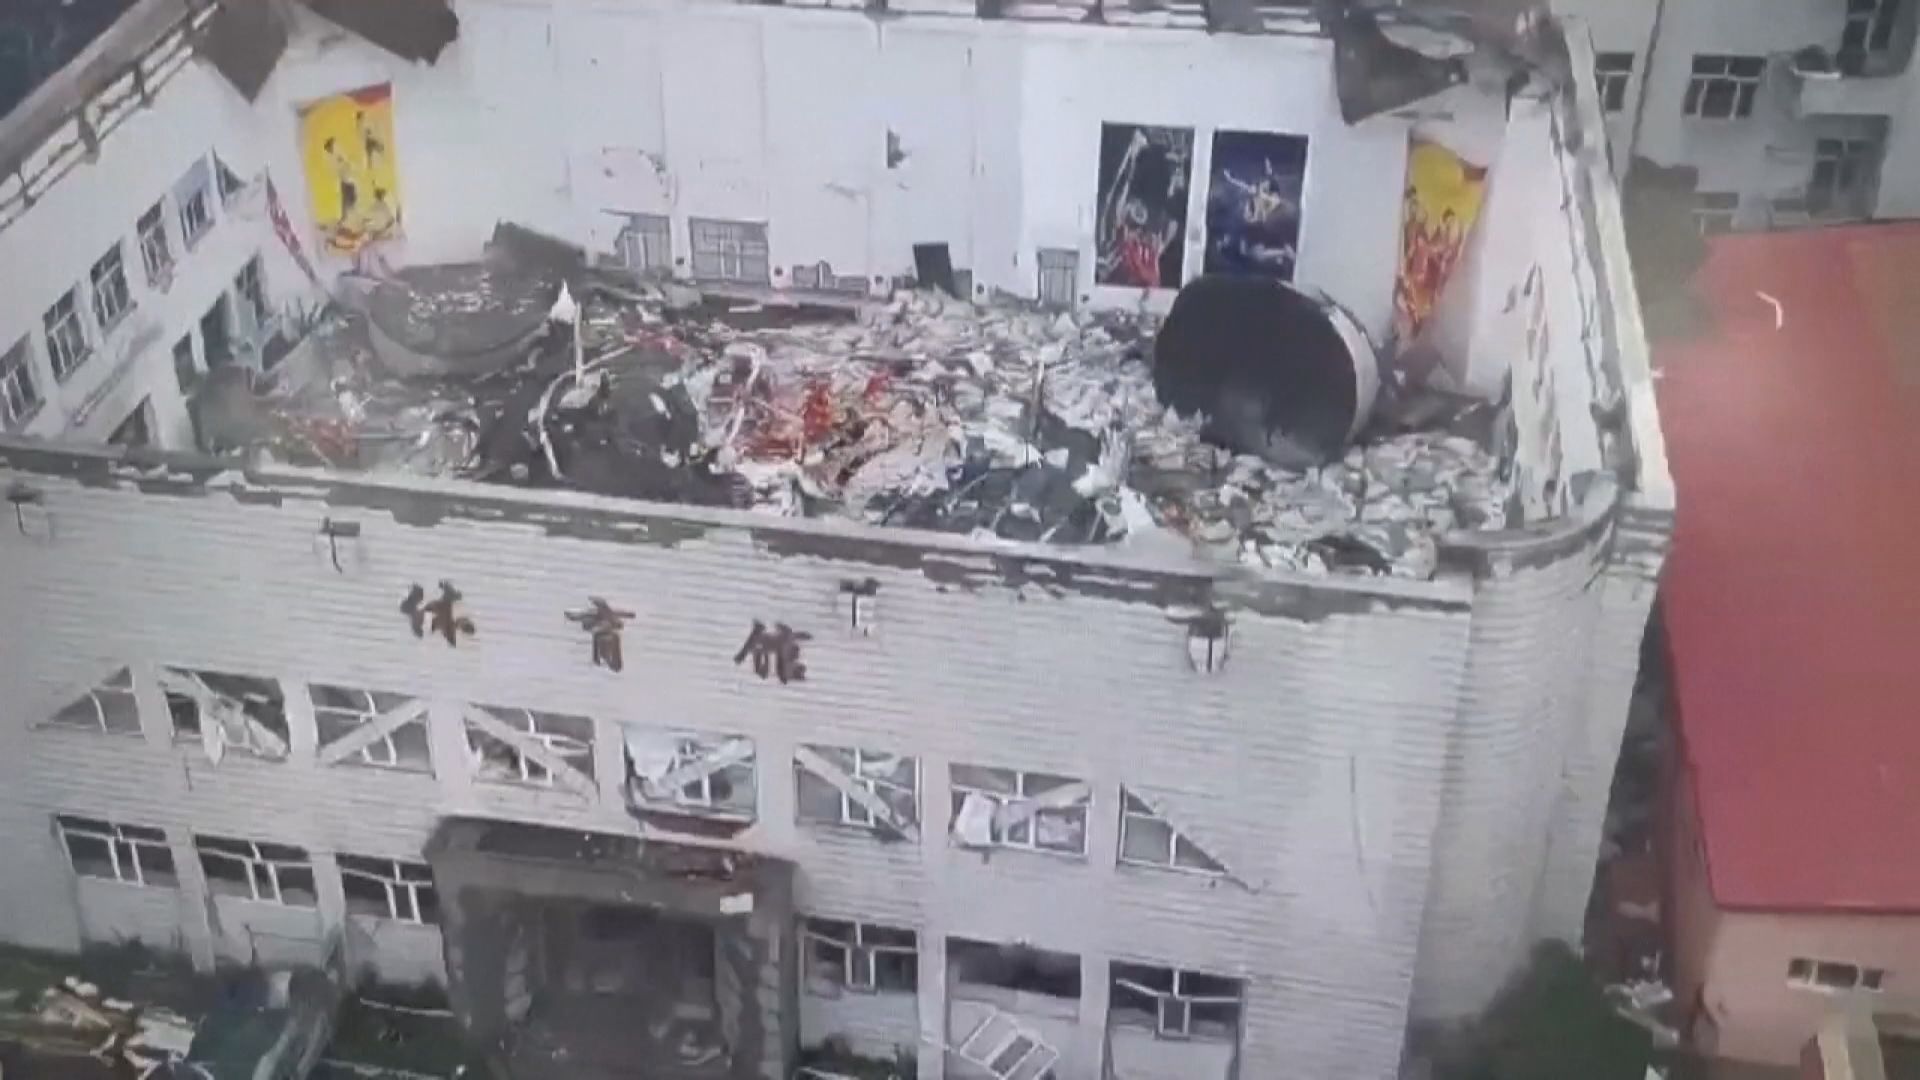 齊齊哈爾市中學體育館屋頂坍塌釀11死 疑涉違規存放建築物料